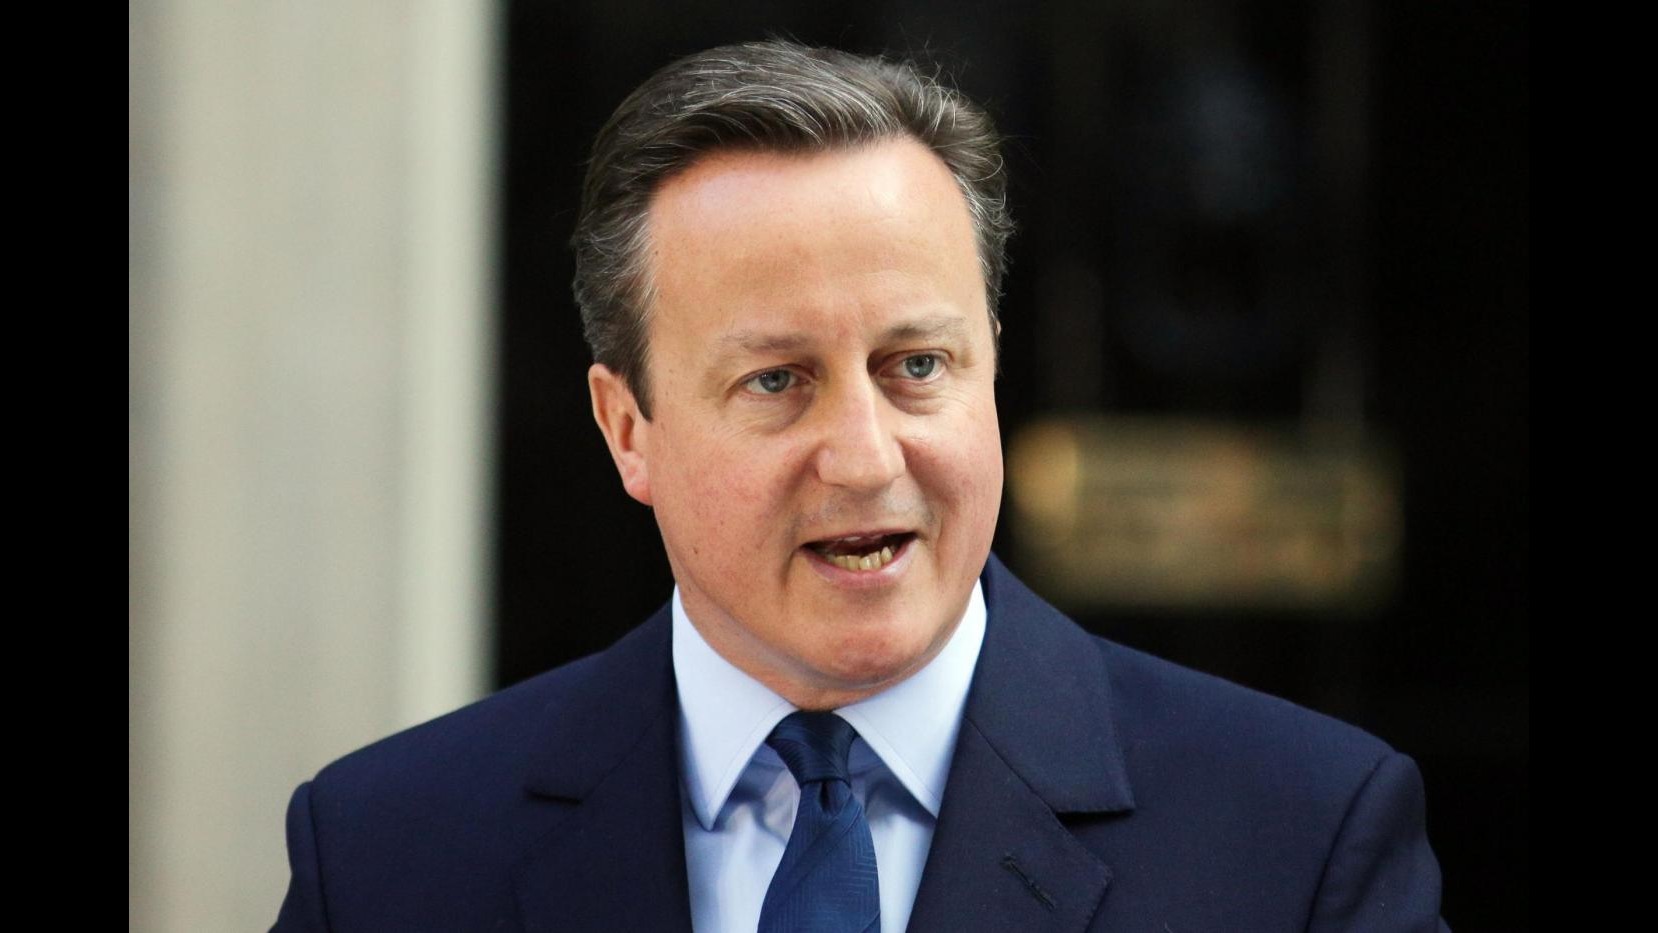 FOTO – Cameron: ha annunciato le sue dimissioni